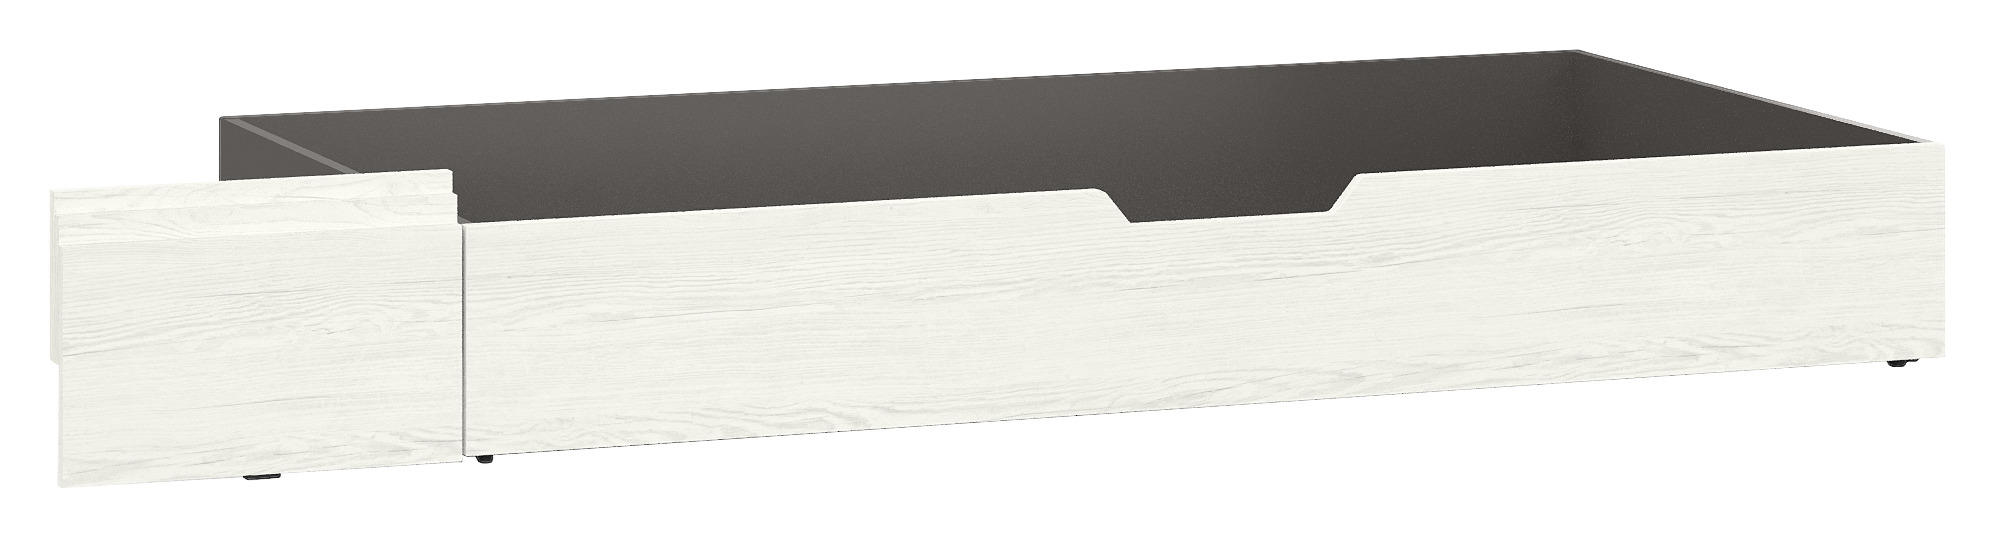 BETTKASTEN 85/23/200 cm Weiß, Anthrazit  - Anthrazit/Weiß, Design (85/23/200cm) - SetOne by Musterring